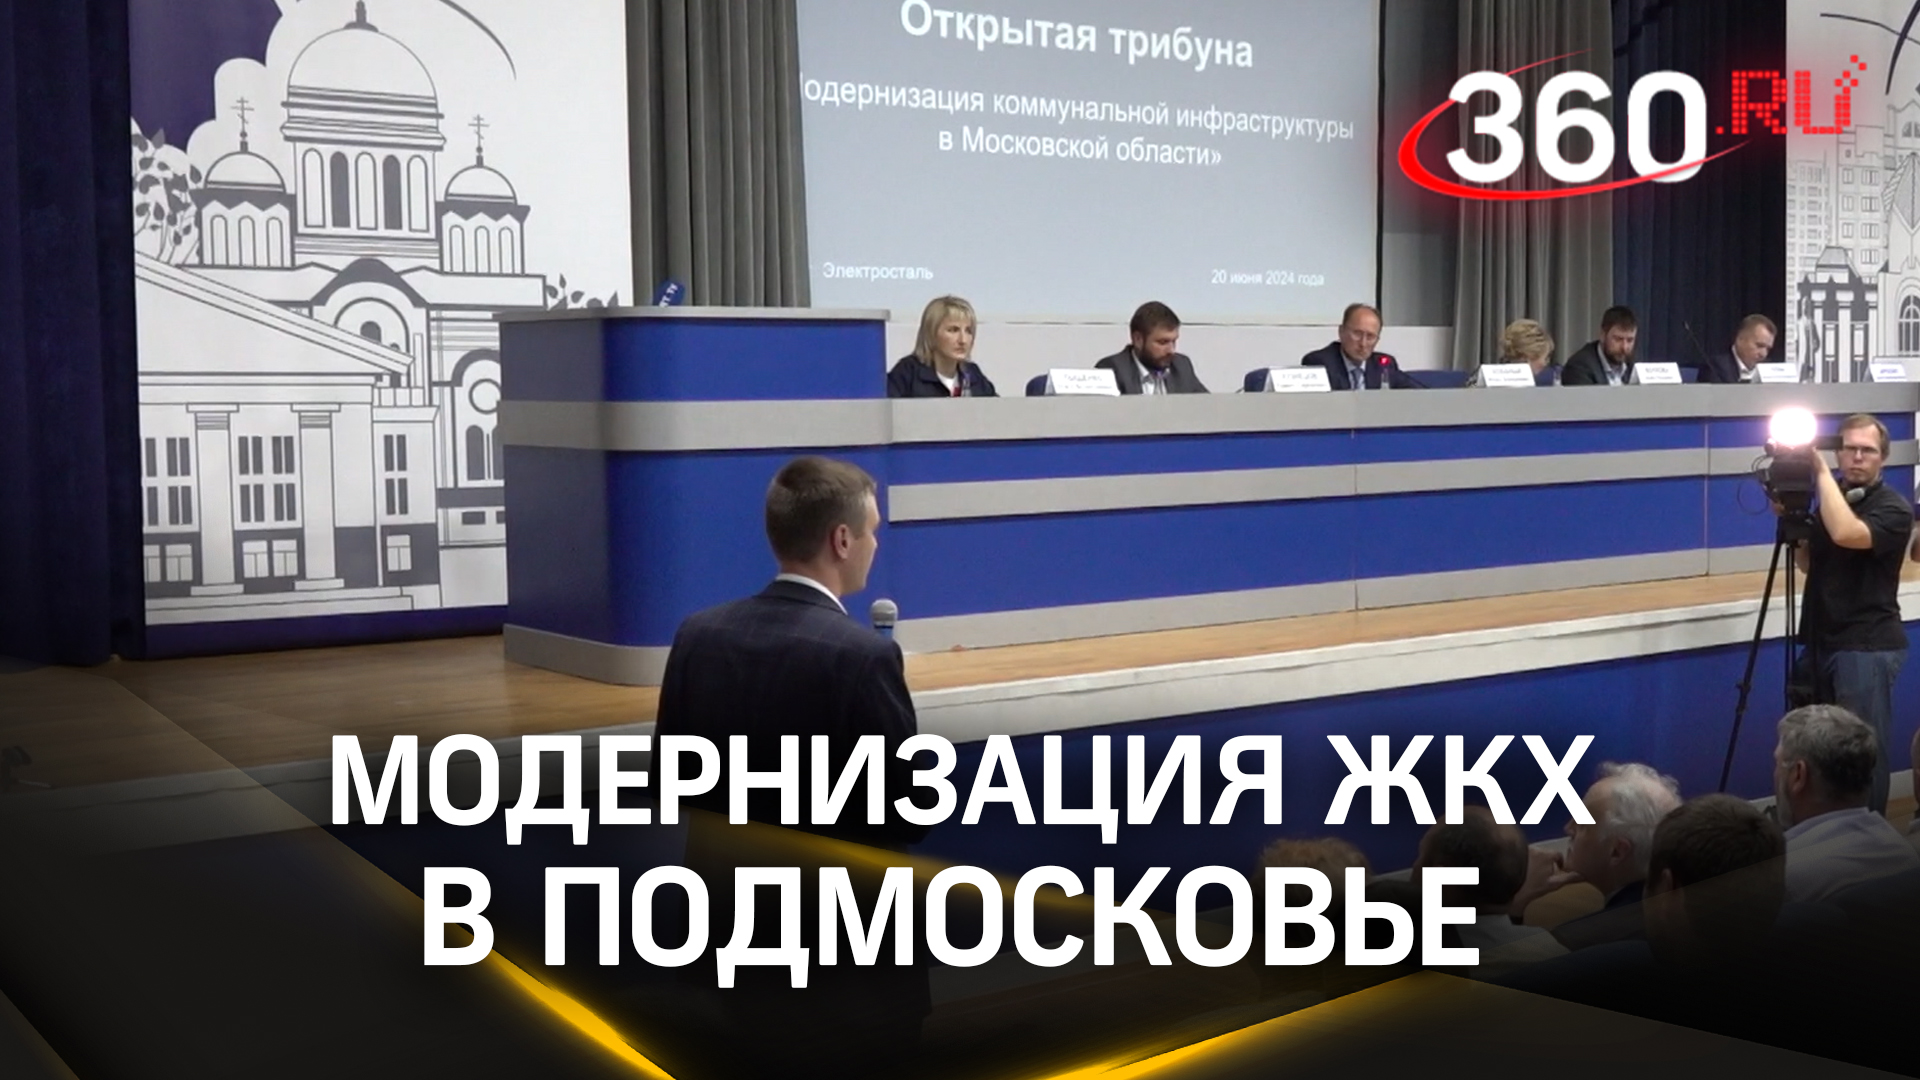 Жителям Подмосковья рассказали о модернизации коммунальной инфраструктуры